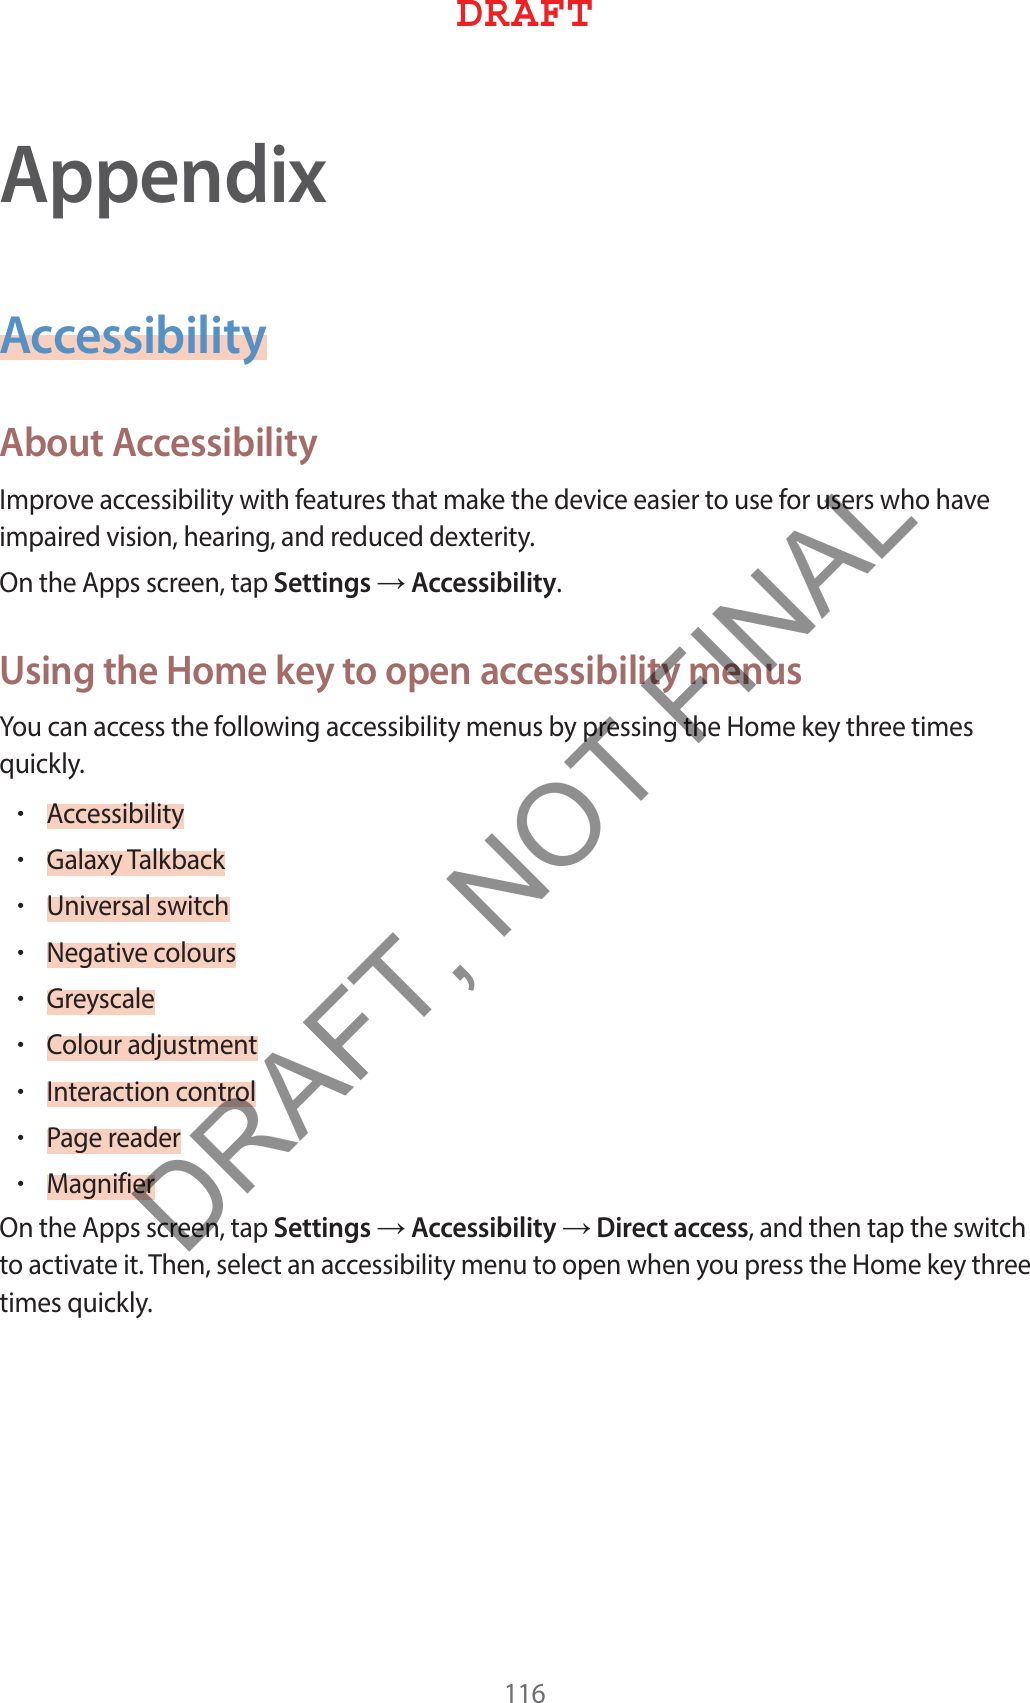 AppendixAccessibilityAbout Accessibility*NQSPWFBDDFTTJCJMJUZXJUIGFBUVSFTUIBUNBLFUIFEFWJDFFBTJFSUPVTFGPSVTFSTXIPIBWFJNQBJSFEWJTJPOIFBSJOHBOESFEVDFEEFYUFSJUZ0OUIF&quot;QQTTDSFFOUBQSettingsĺAccessibilityUsing the Home key to open accessibility menus:PVDBOBDDFTTUIFGPMMPXJOHBDDFTTJCJMJUZNFOVTCZQSFTTJOHUIF)PNFLFZUISFFUJNFTRVJDLMZr&quot;DDFTTJCJMJUZr(BMBYZ5BMLCBDLr6OJWFSTBMTXJUDIr/FHBUJWFDPMPVSTr(SFZTDBMFr$PMPVSBEKVTUNFOUr*OUFSBDUJPODPOUSPMr1BHFSFBEFSr.BHOJGJFS0OUIF&quot;QQTTDSFFOUBQSettingsĺAccessibilityĺDirect accessBOEUIFOUBQUIFTXJUDIUPBDUJWBUFJU5IFOTFMFDUBOBDDFTTJCJMJUZNFOVUPPQFOXIFOZPVQSFTTUIF)PNFLFZUISFFUJNFTRVJDLMZ%3&quot;&apos;5DRAFT, NOT FINAL